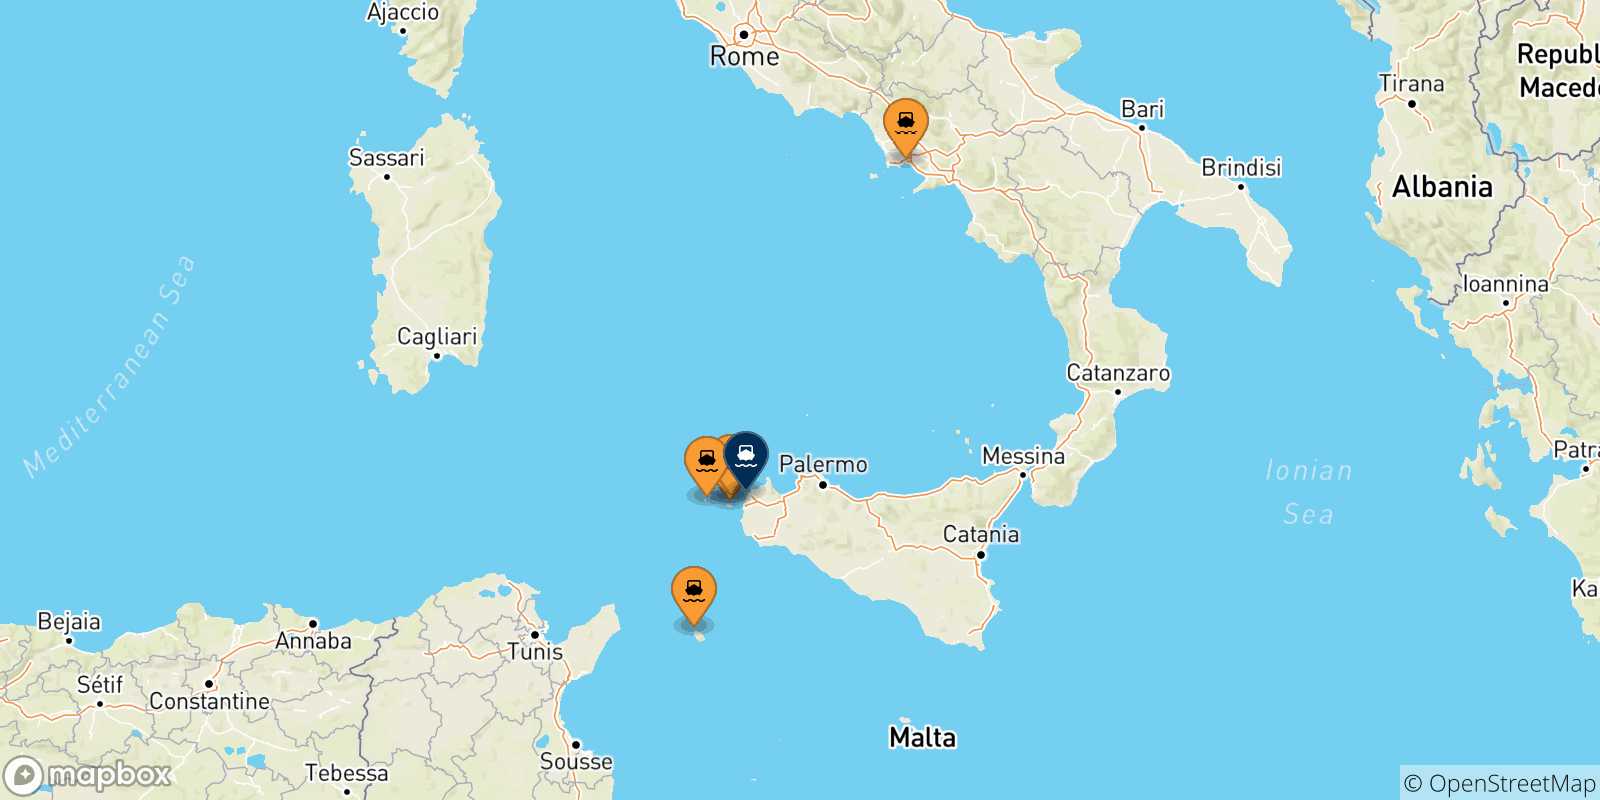 Mappa delle possibili rotte tra l'Italia e Trapani